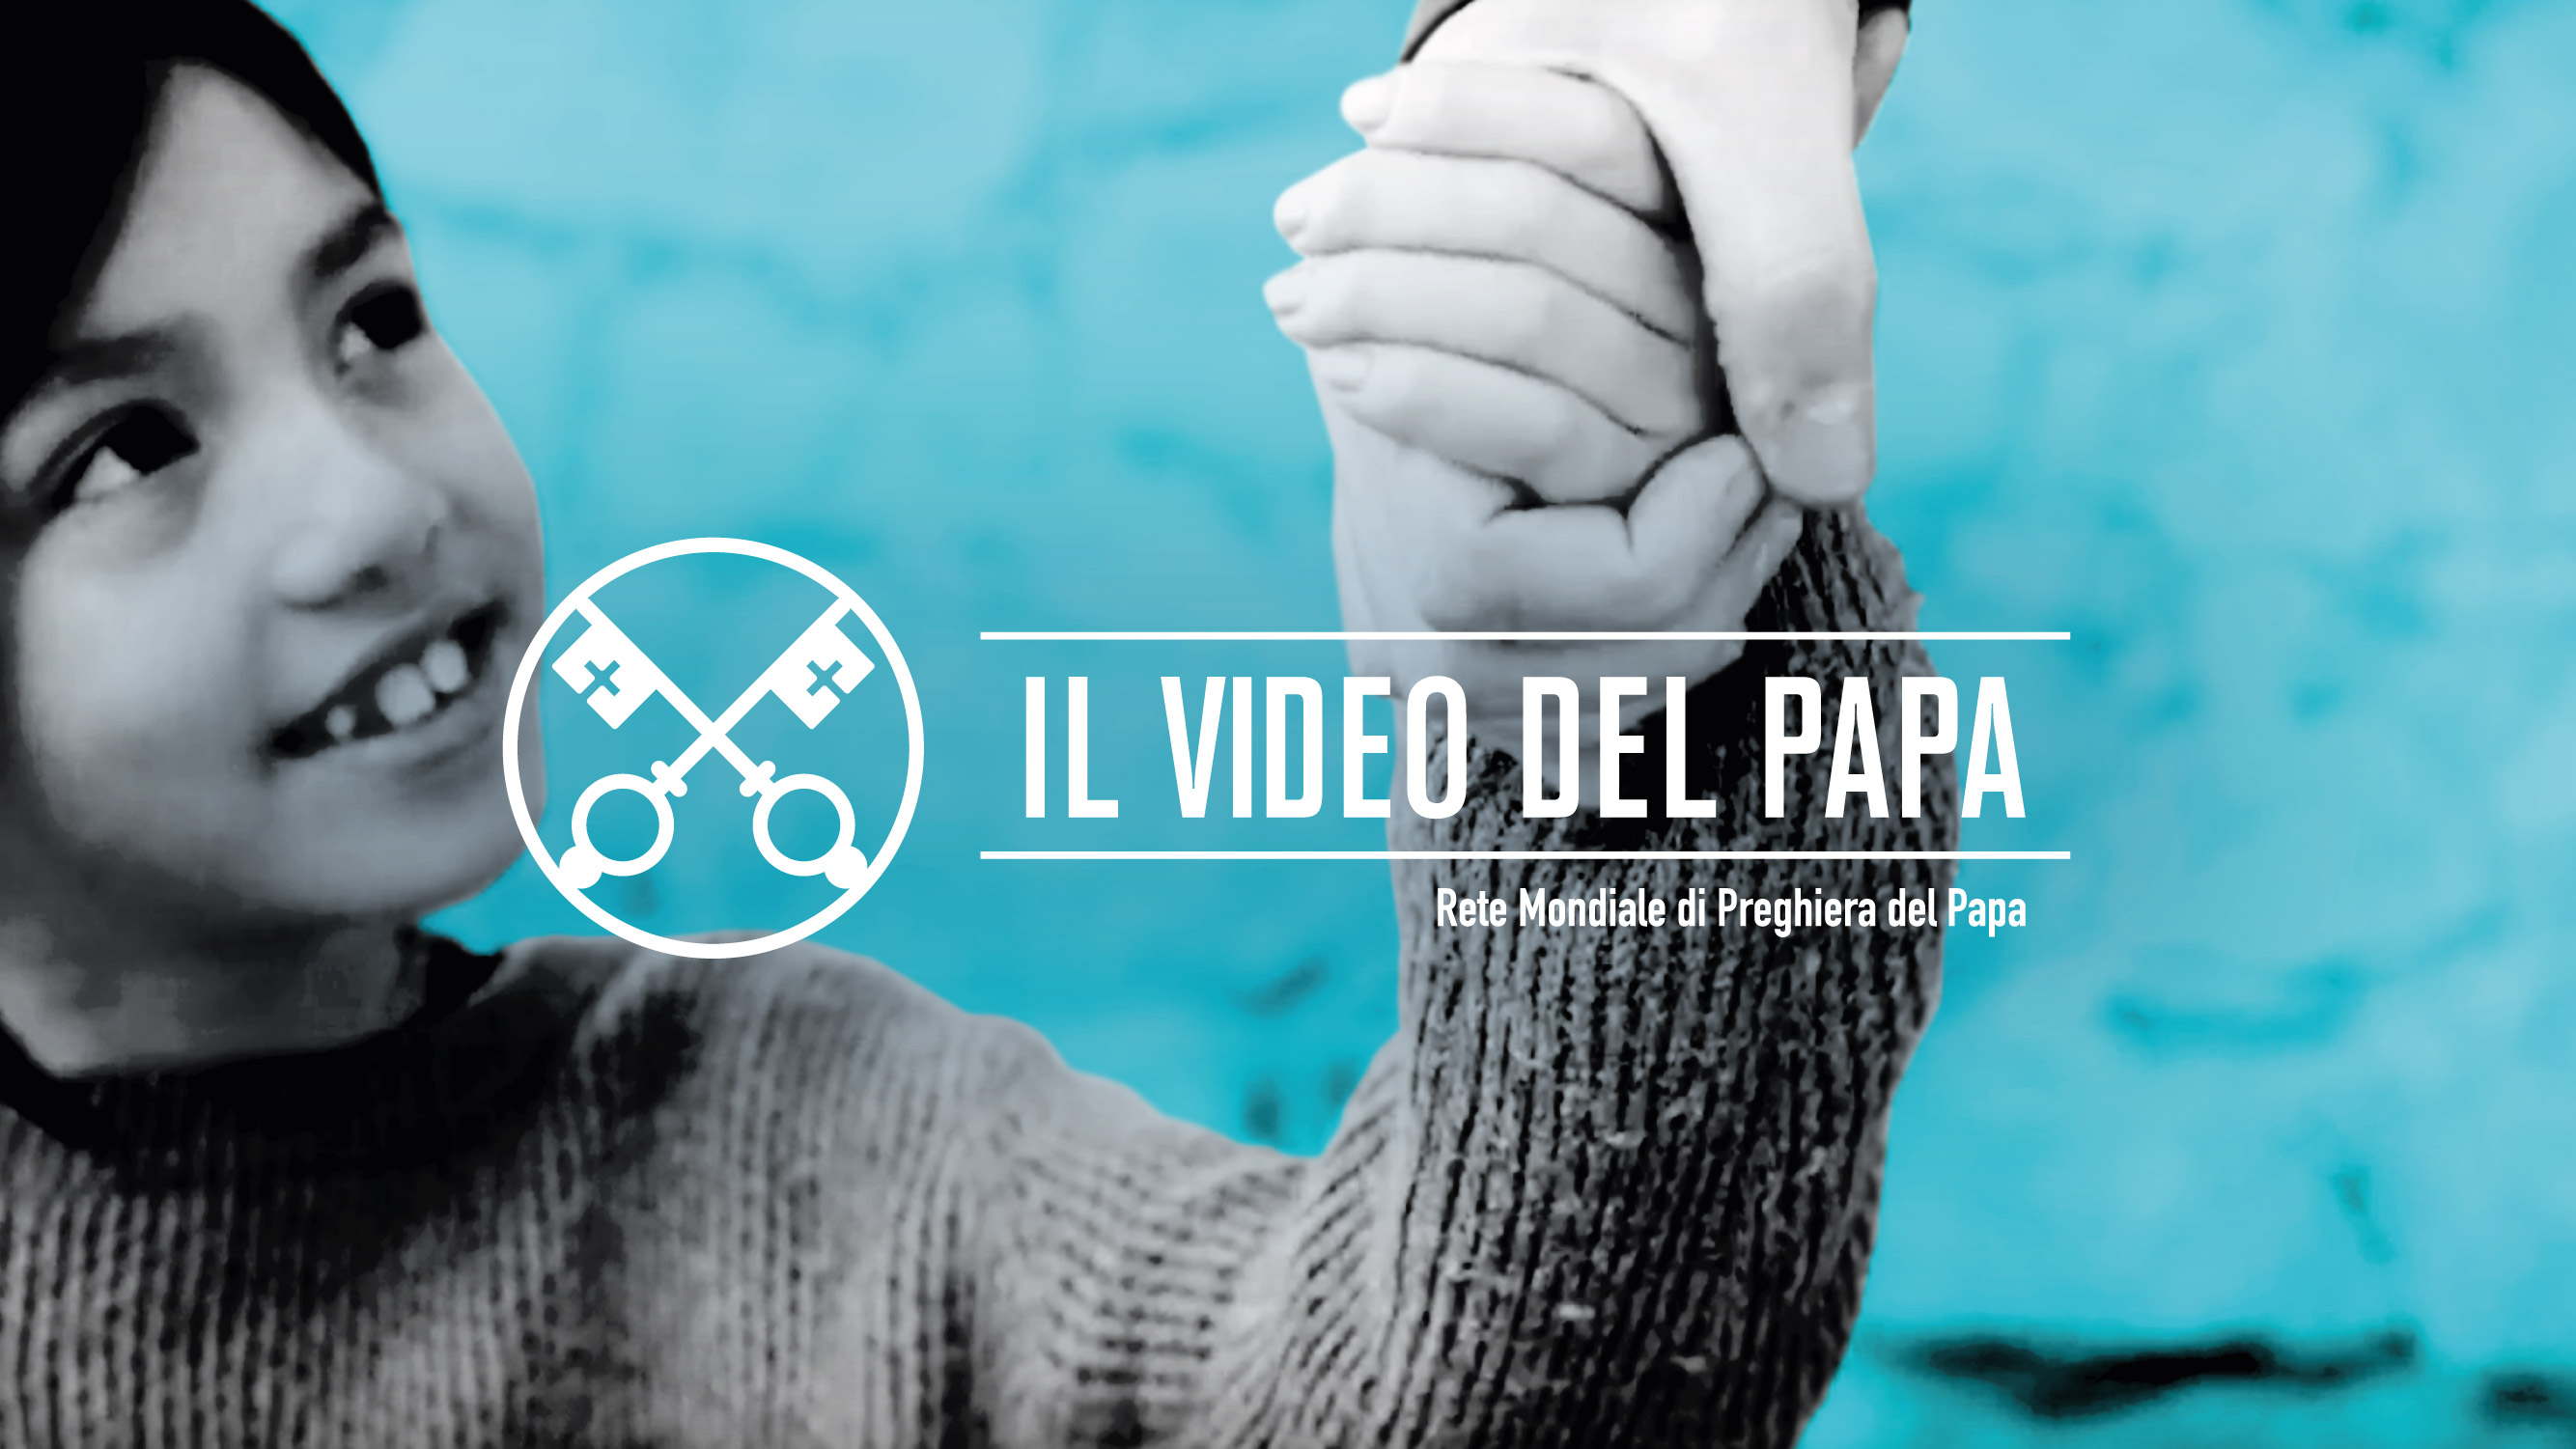 Il Video del Papa: Ogni bambino che soffre è un grido che si eleva a Dio